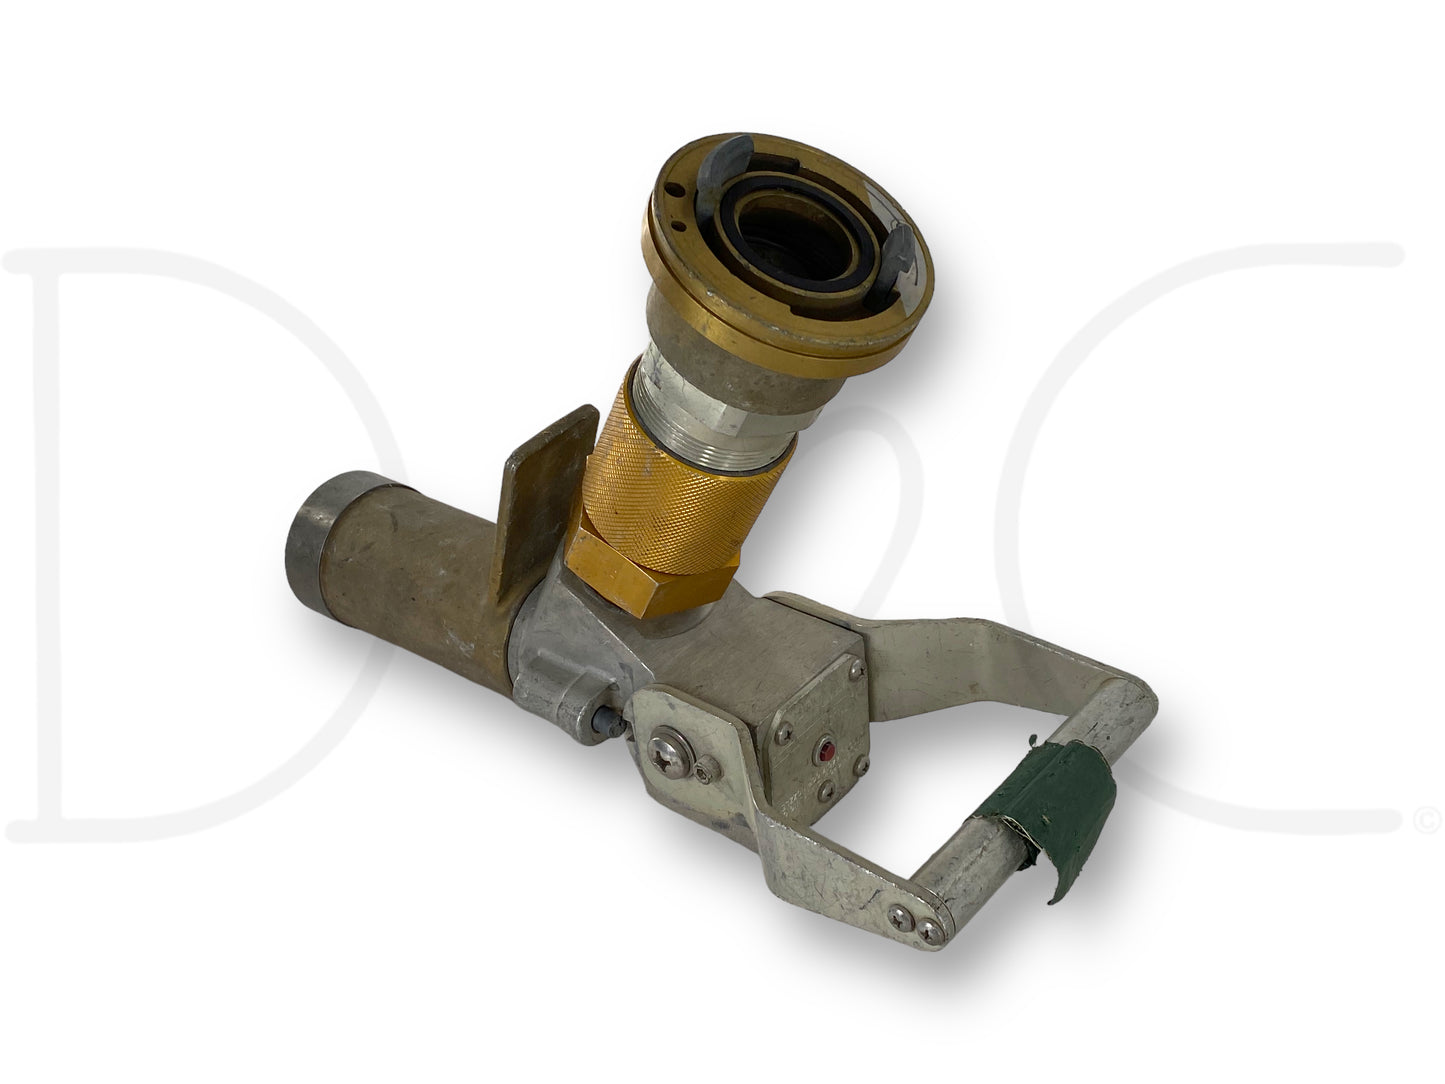 Carter 64017-Ccr Nozzle Fuel & Oil Servicing Pump 64017